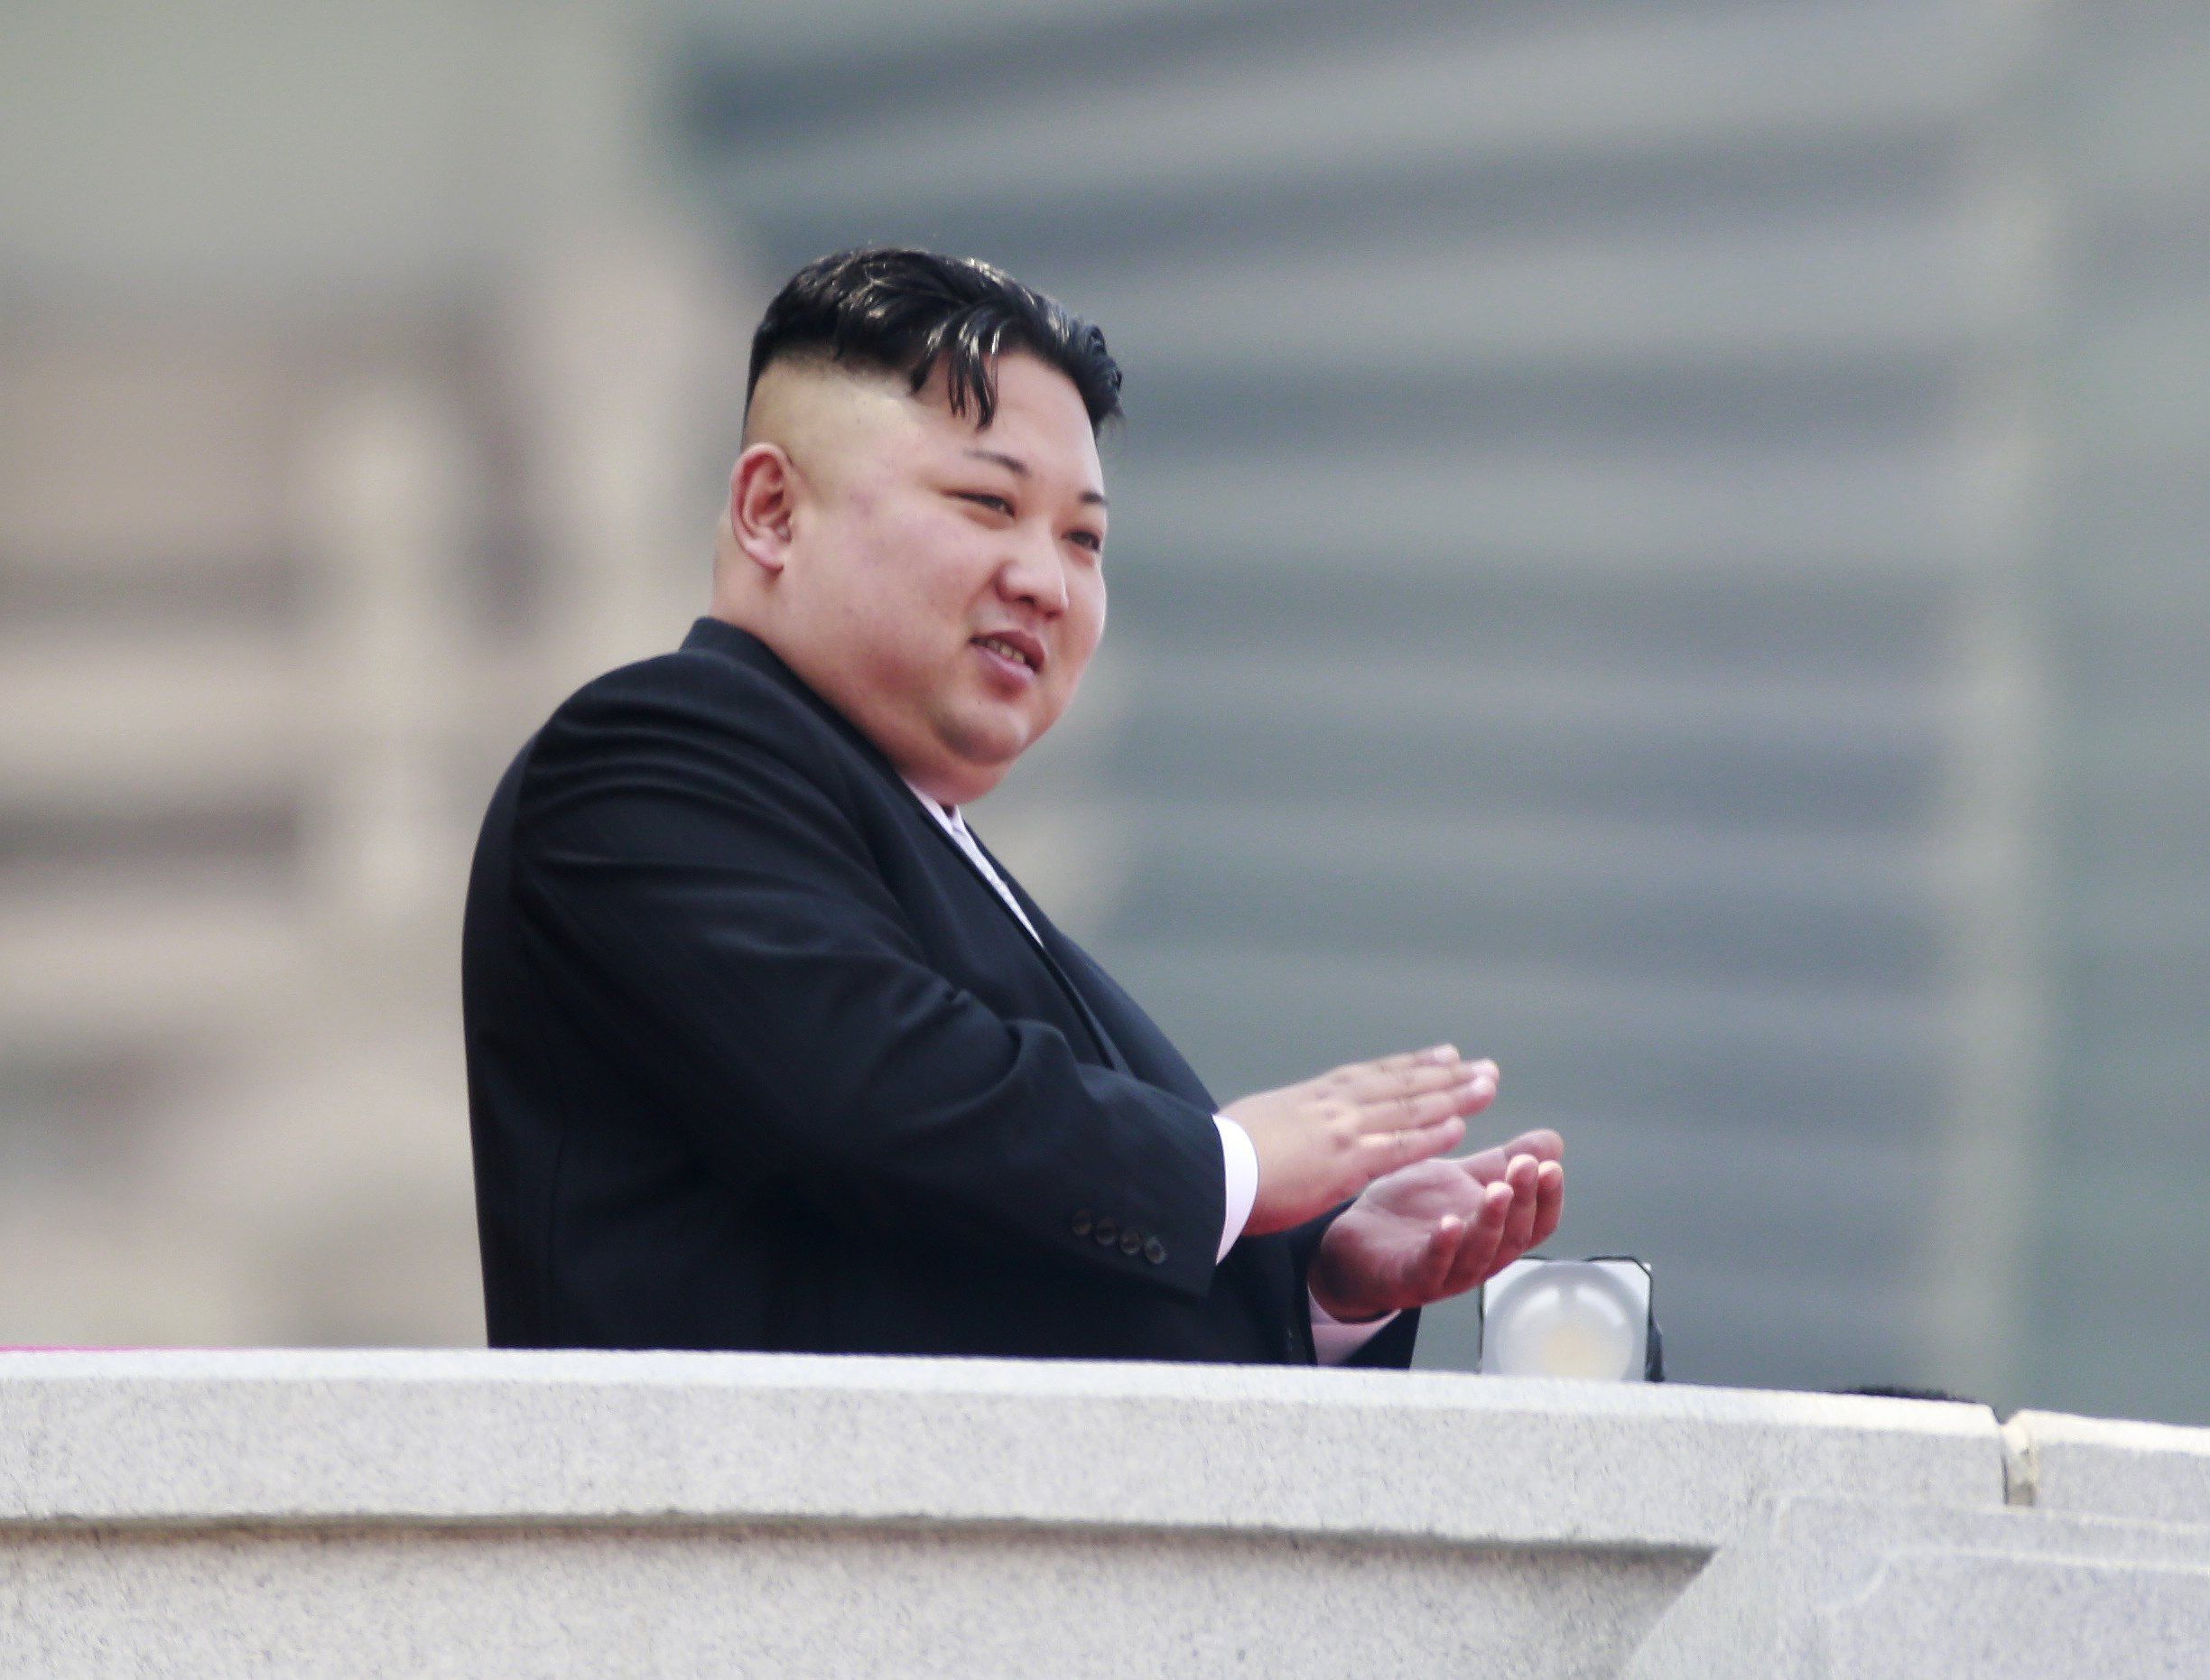 Misil fue un "regalo" para los "bastardos estadounidenses": Kim Jong-un